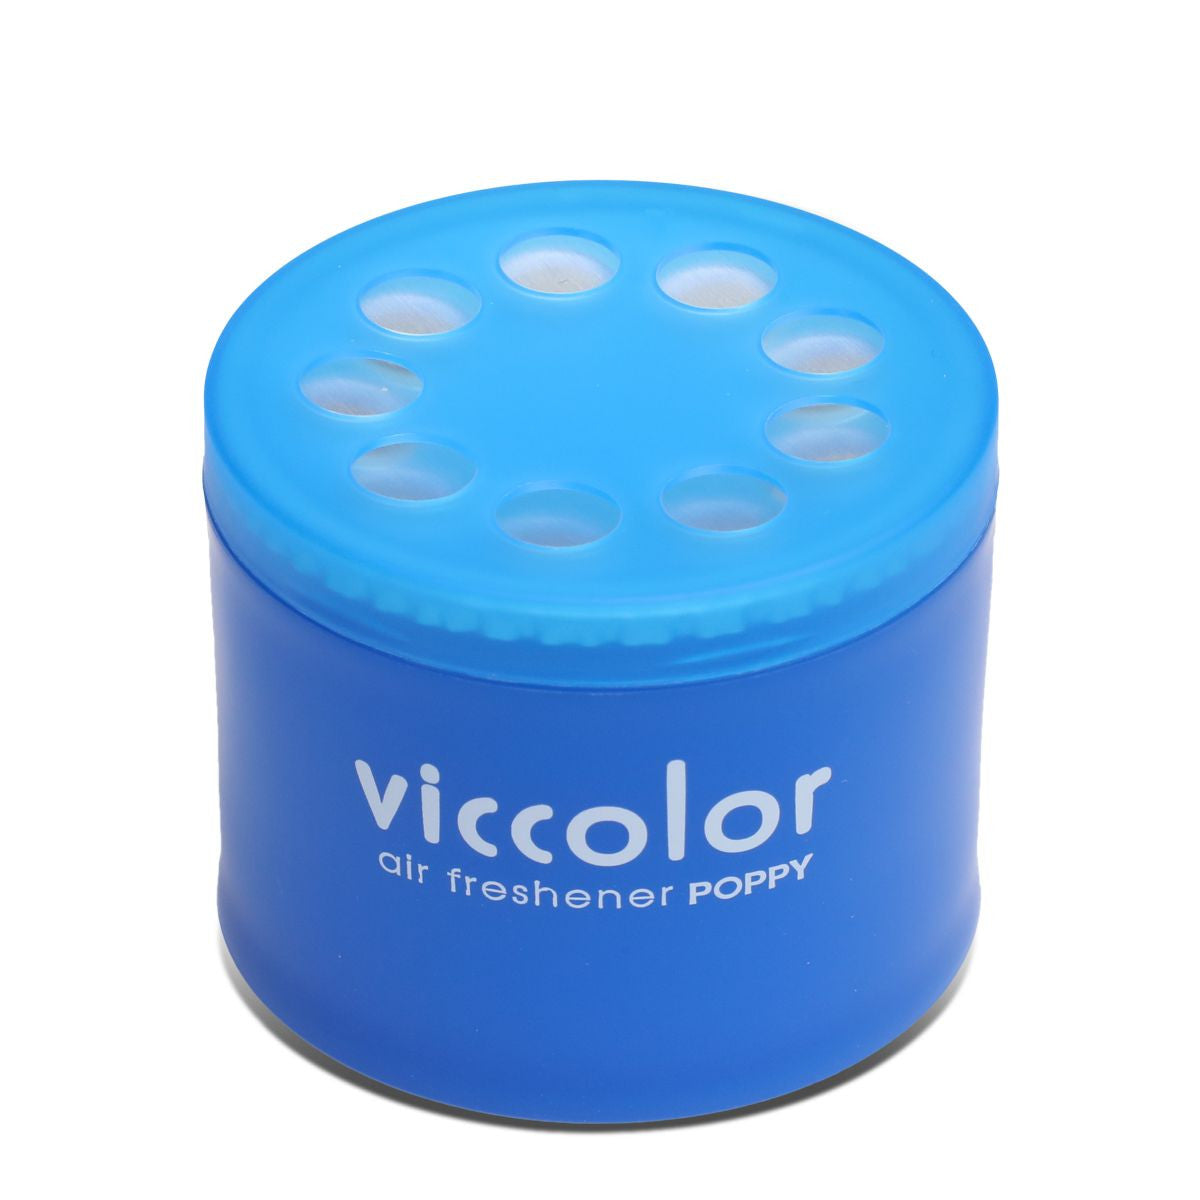 Viccolor Air Freshener - MARINE SQUASH